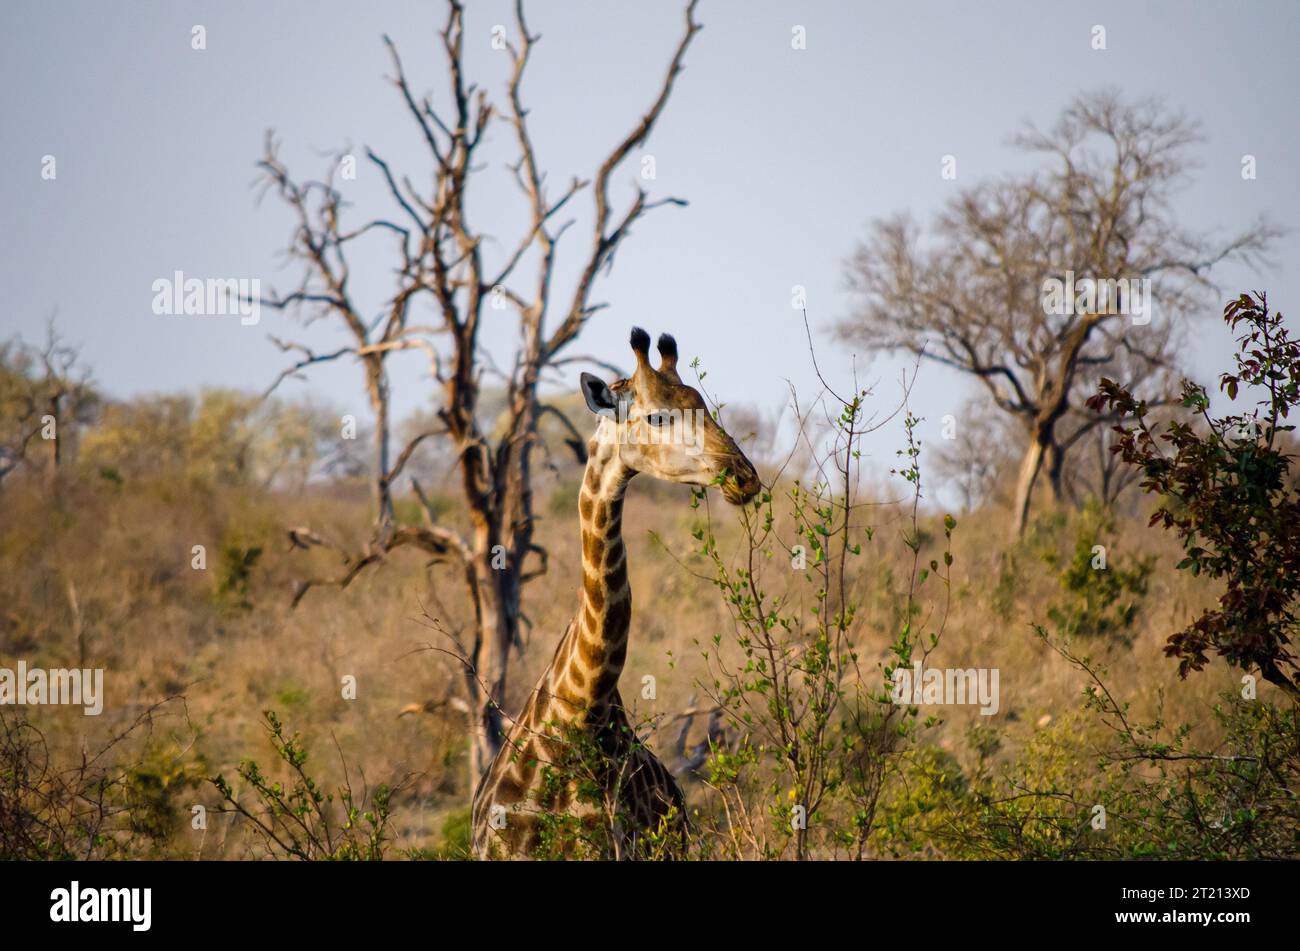 A beautiful young giraffe posing for a photo. Stock Photo